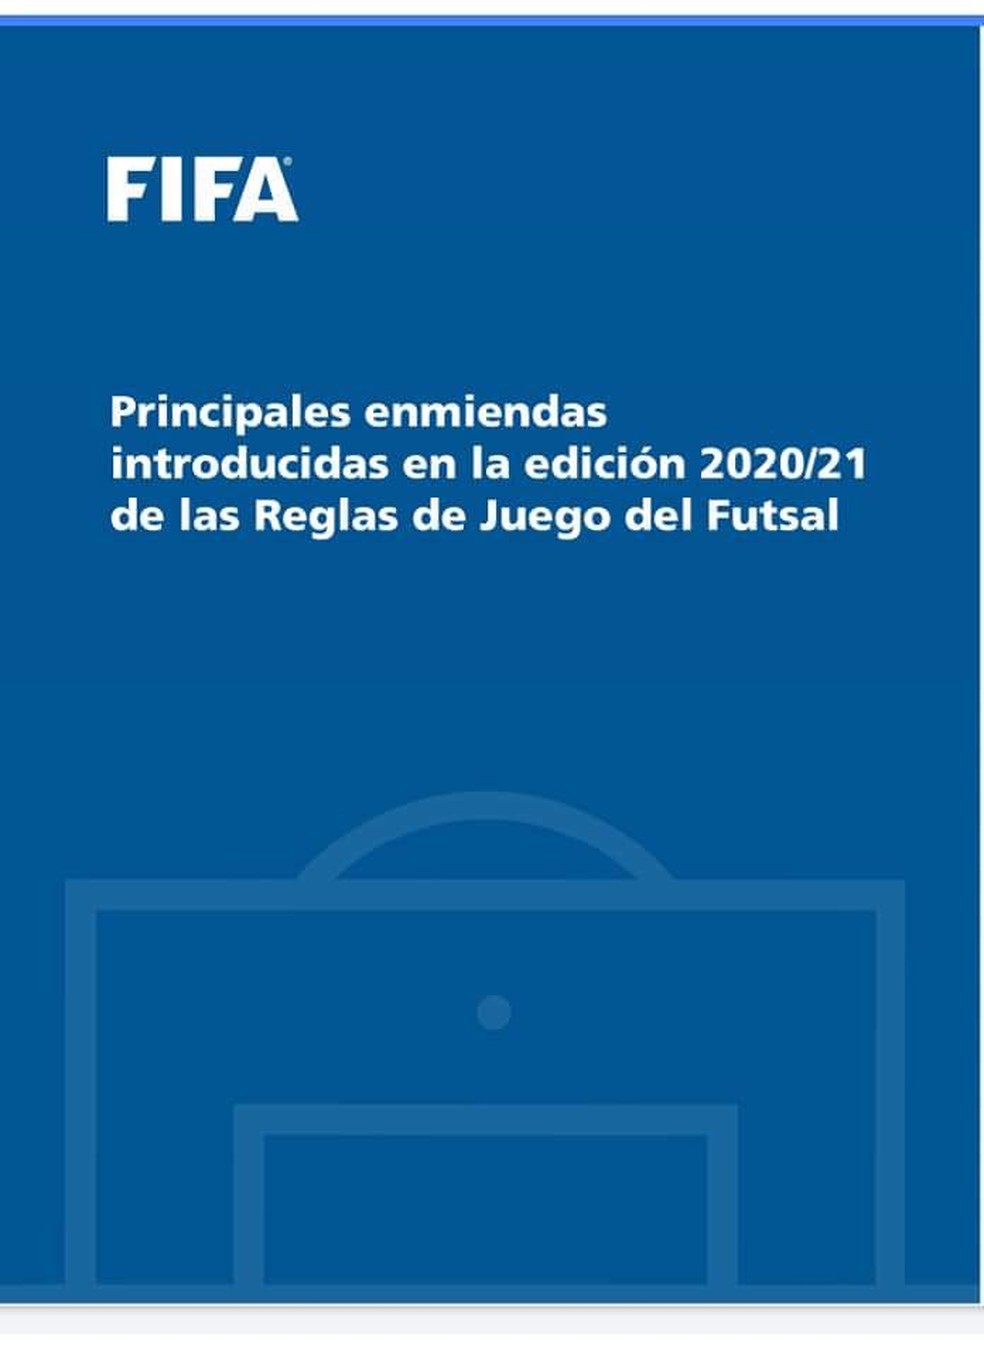 Fifa anuncia mudanças nas regras do futsal - Jornalismo Esporte Clube